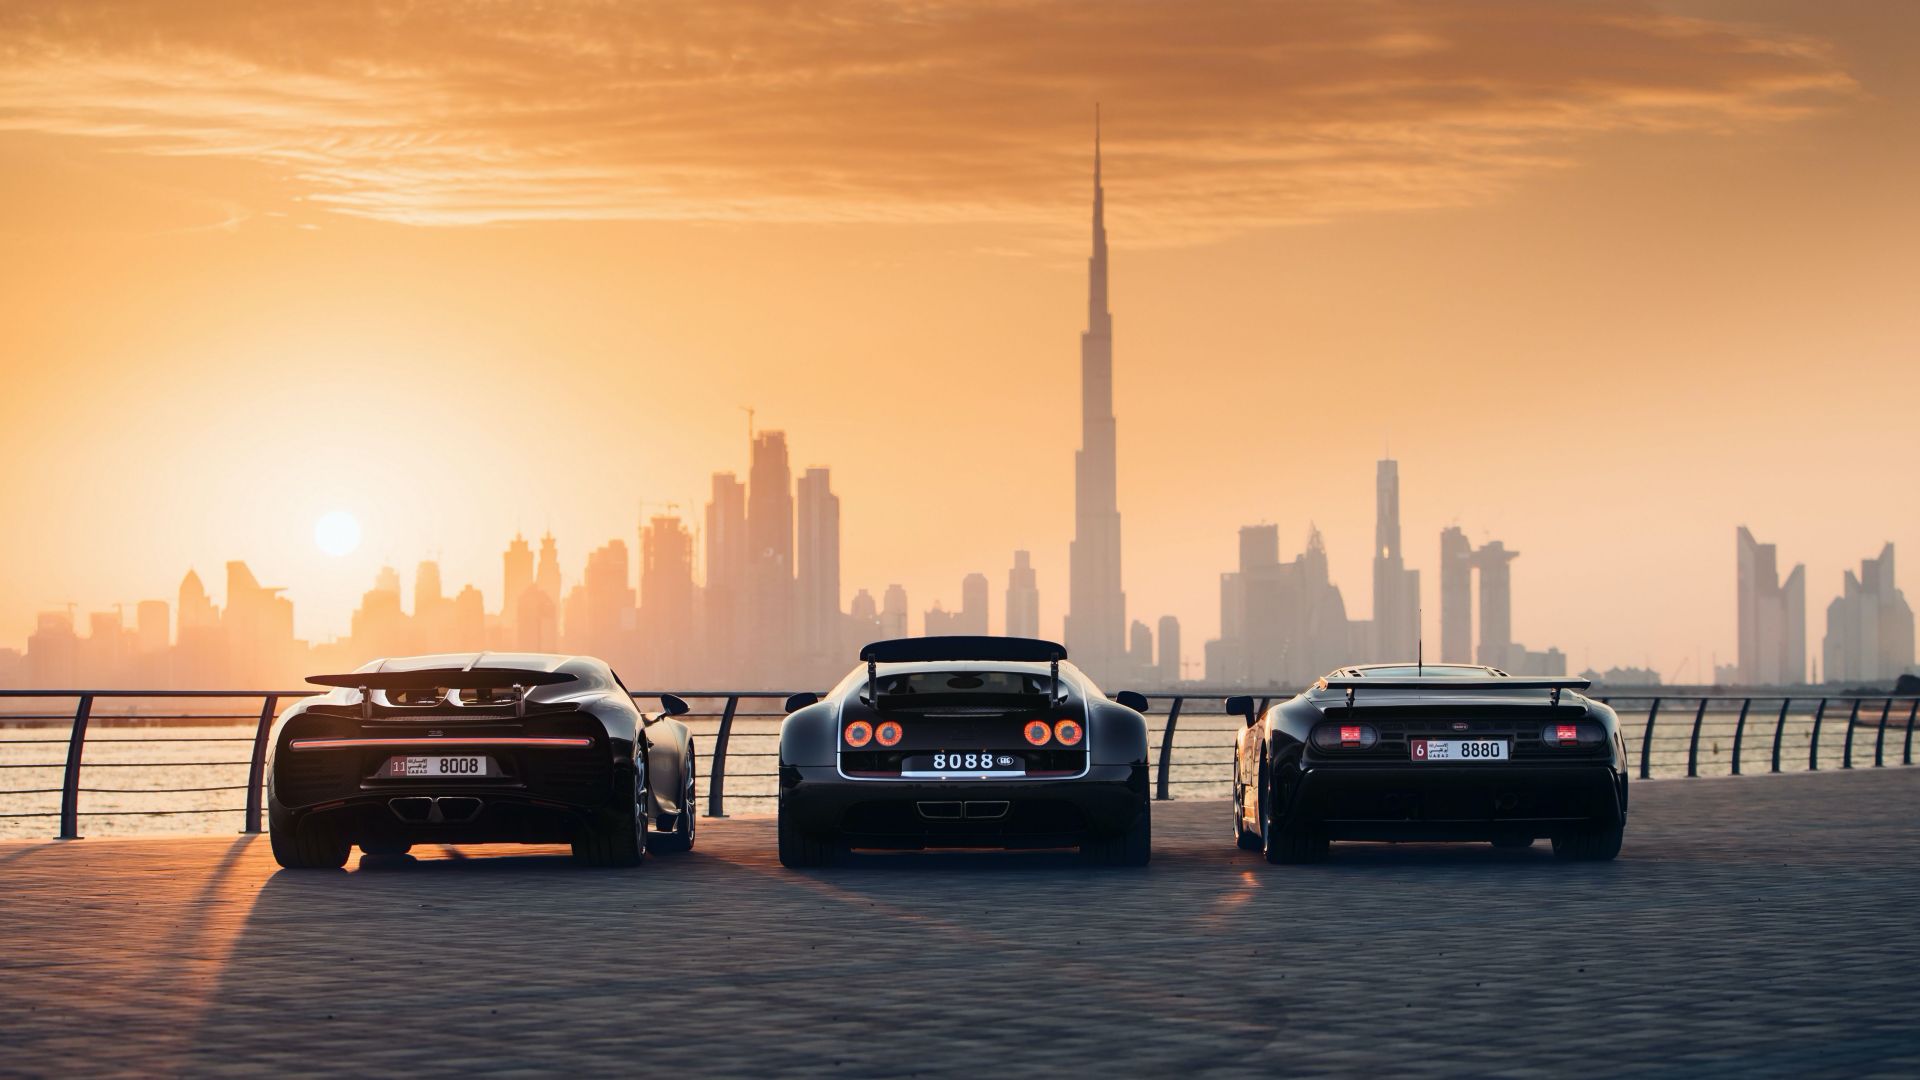 بيع لوحة تراخيص سيارات في دبي بسعر 35.6 مليون ريال! 9